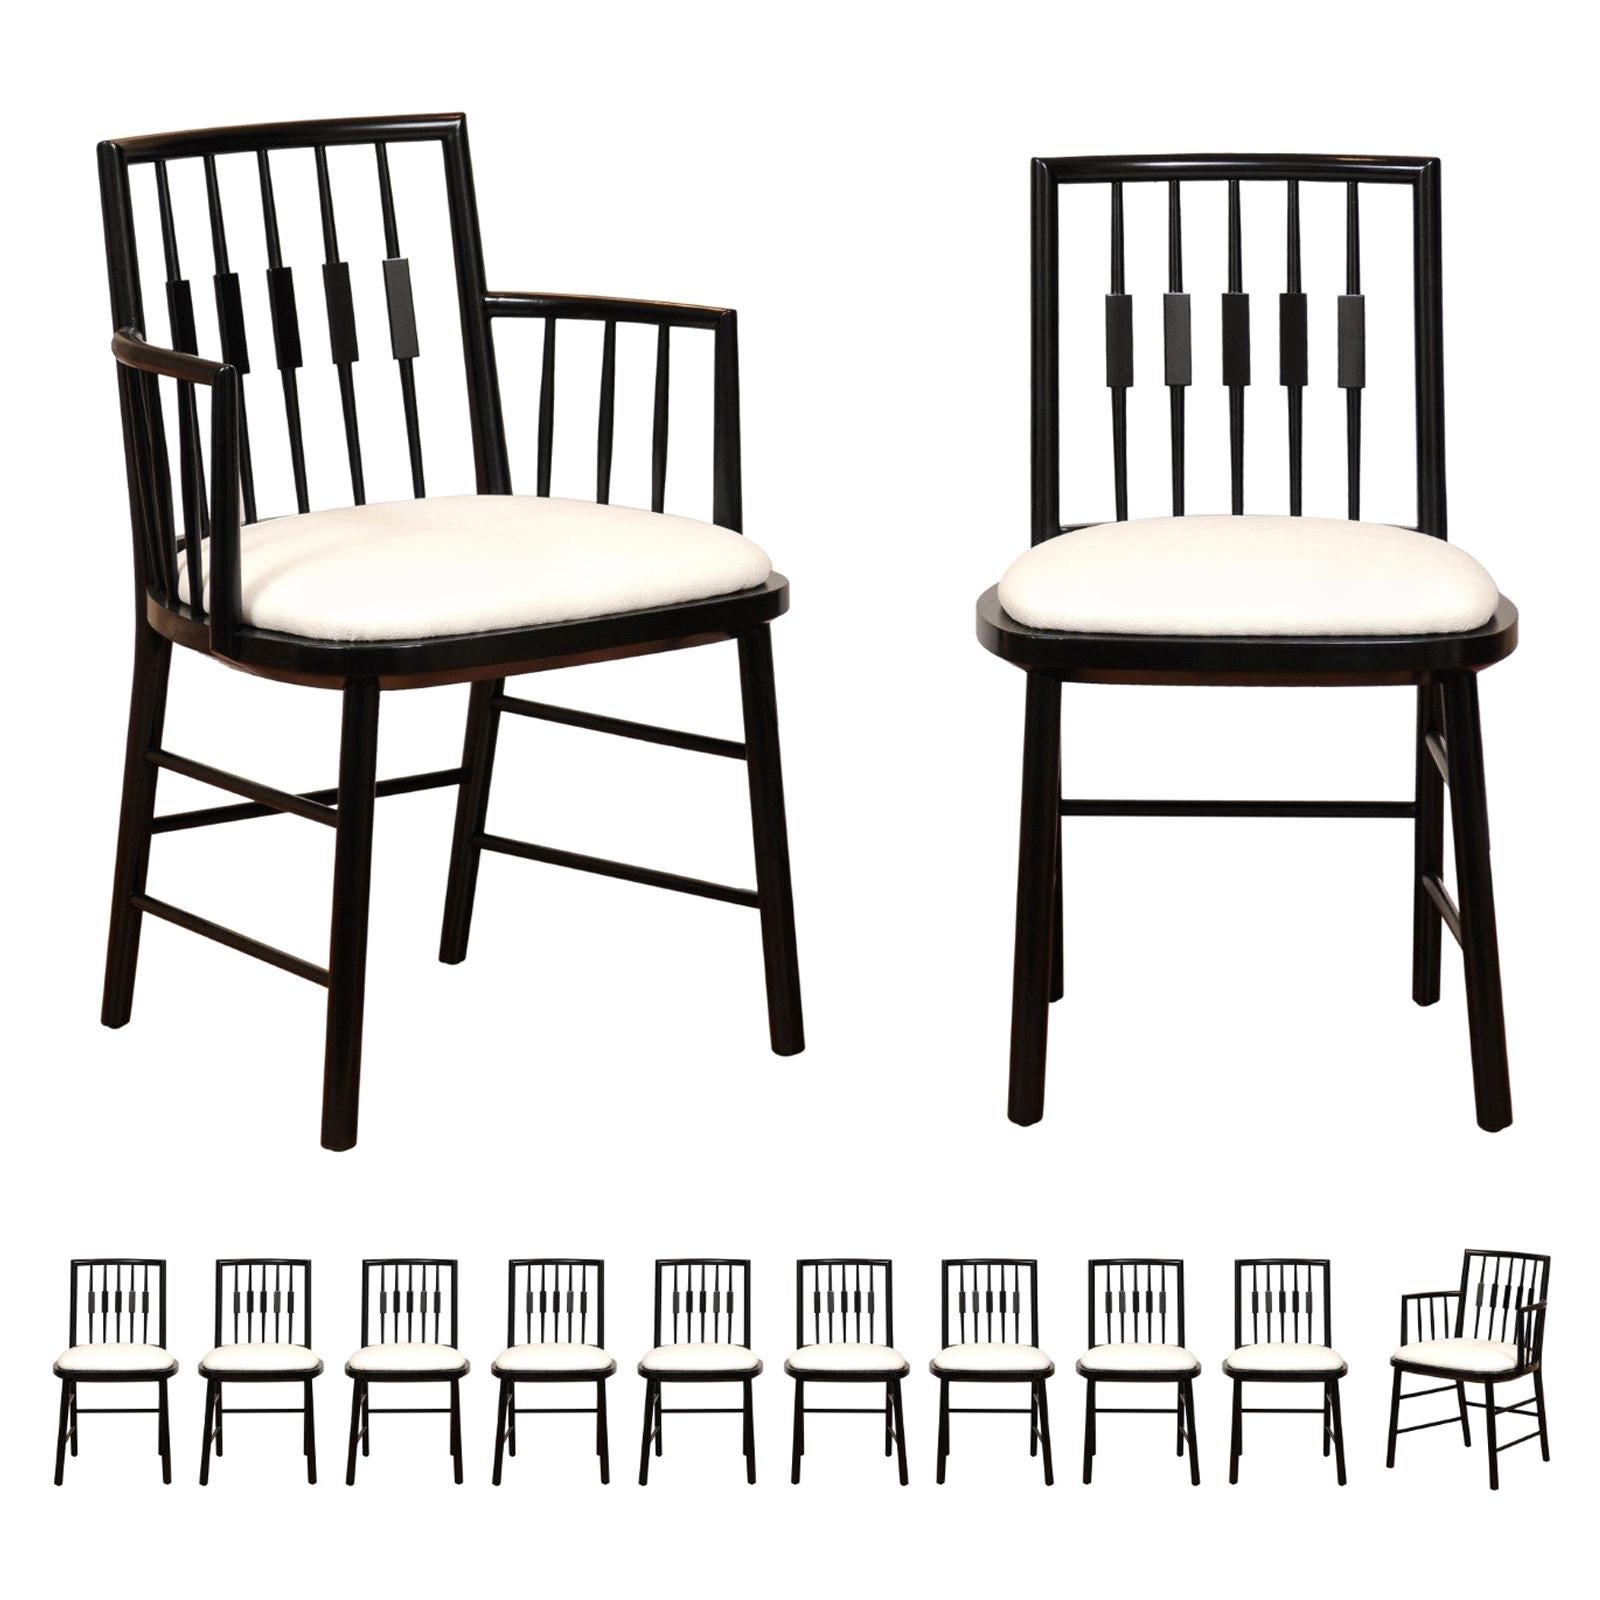  Ensemble Stellar de 12 chaises modernes Windsor de Michael Taylor, datant d'environ 1960